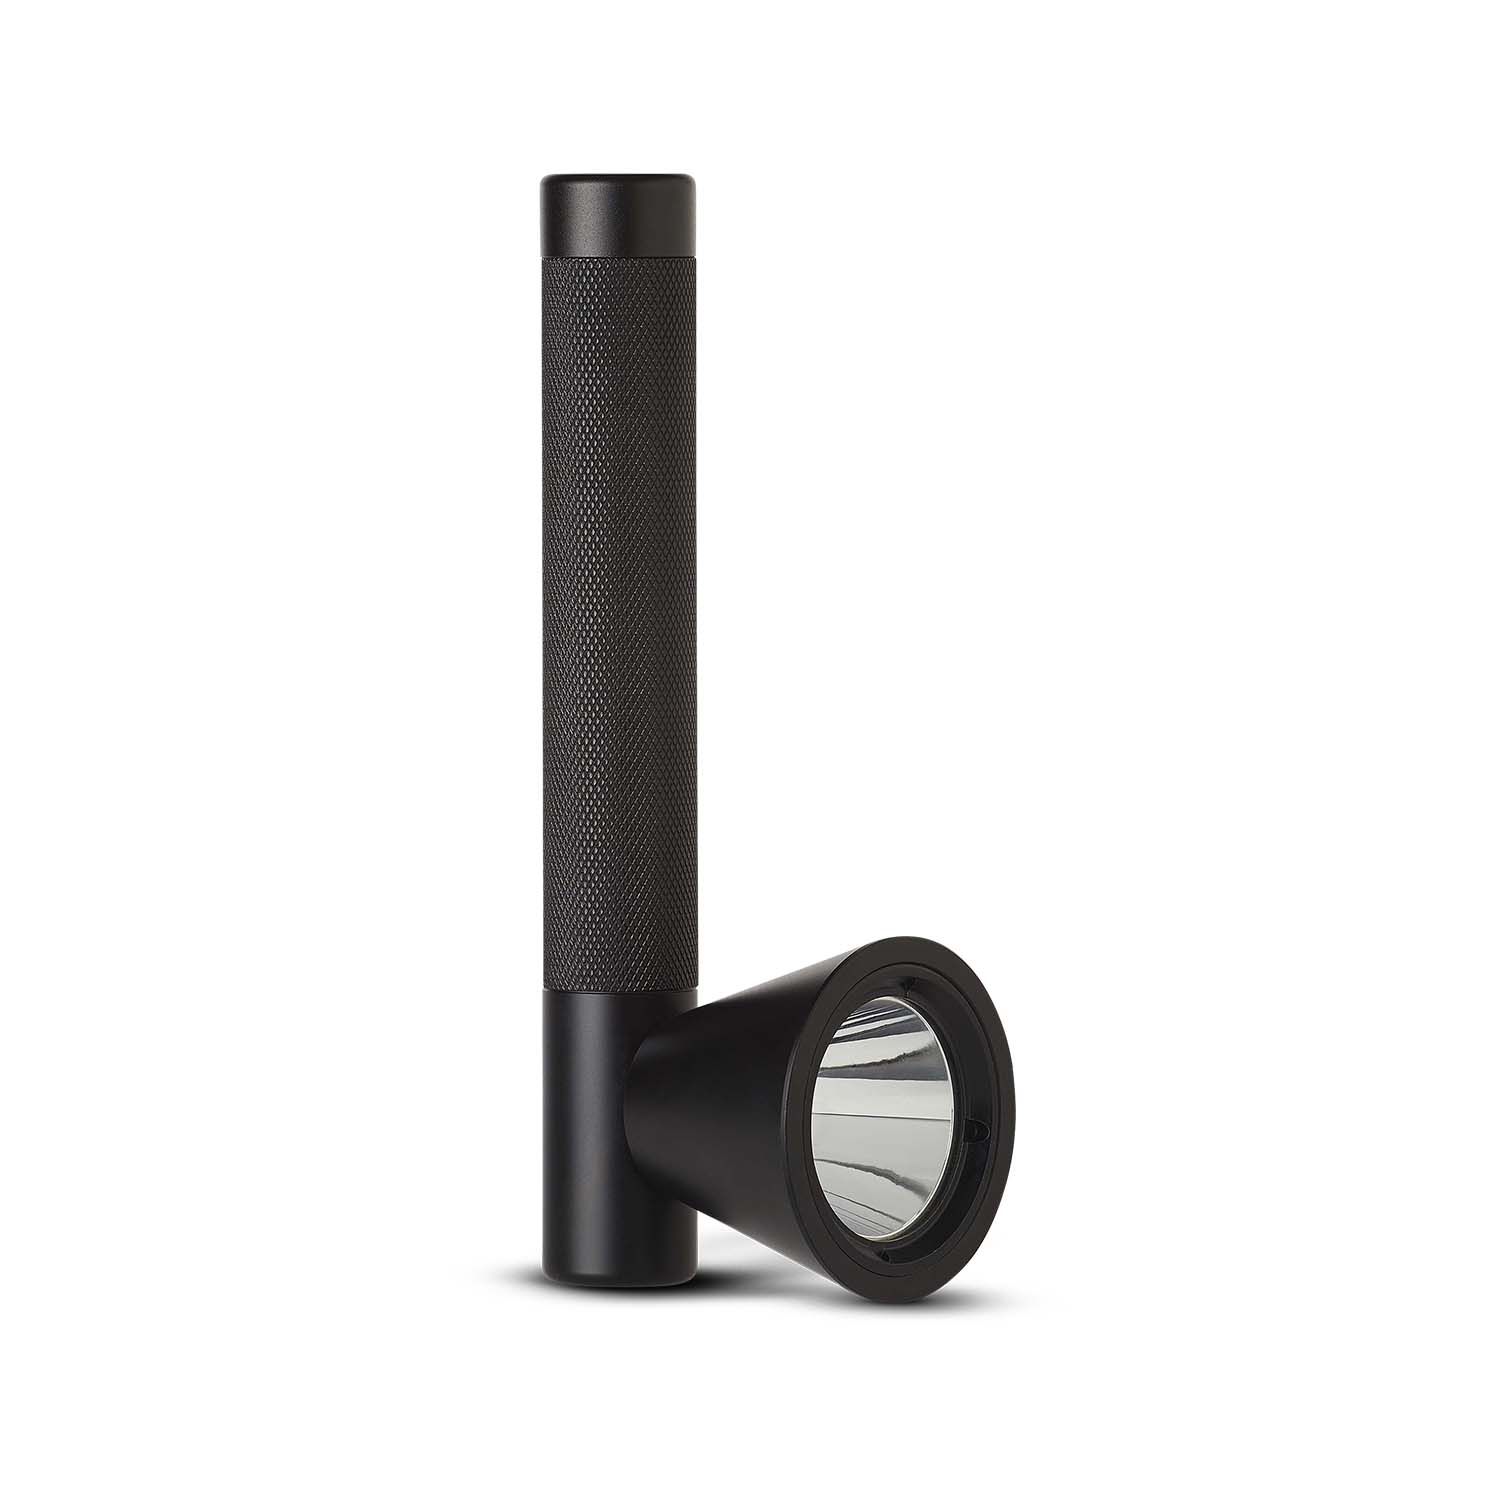 TRACE - Designer flashlight in waterproof black steel